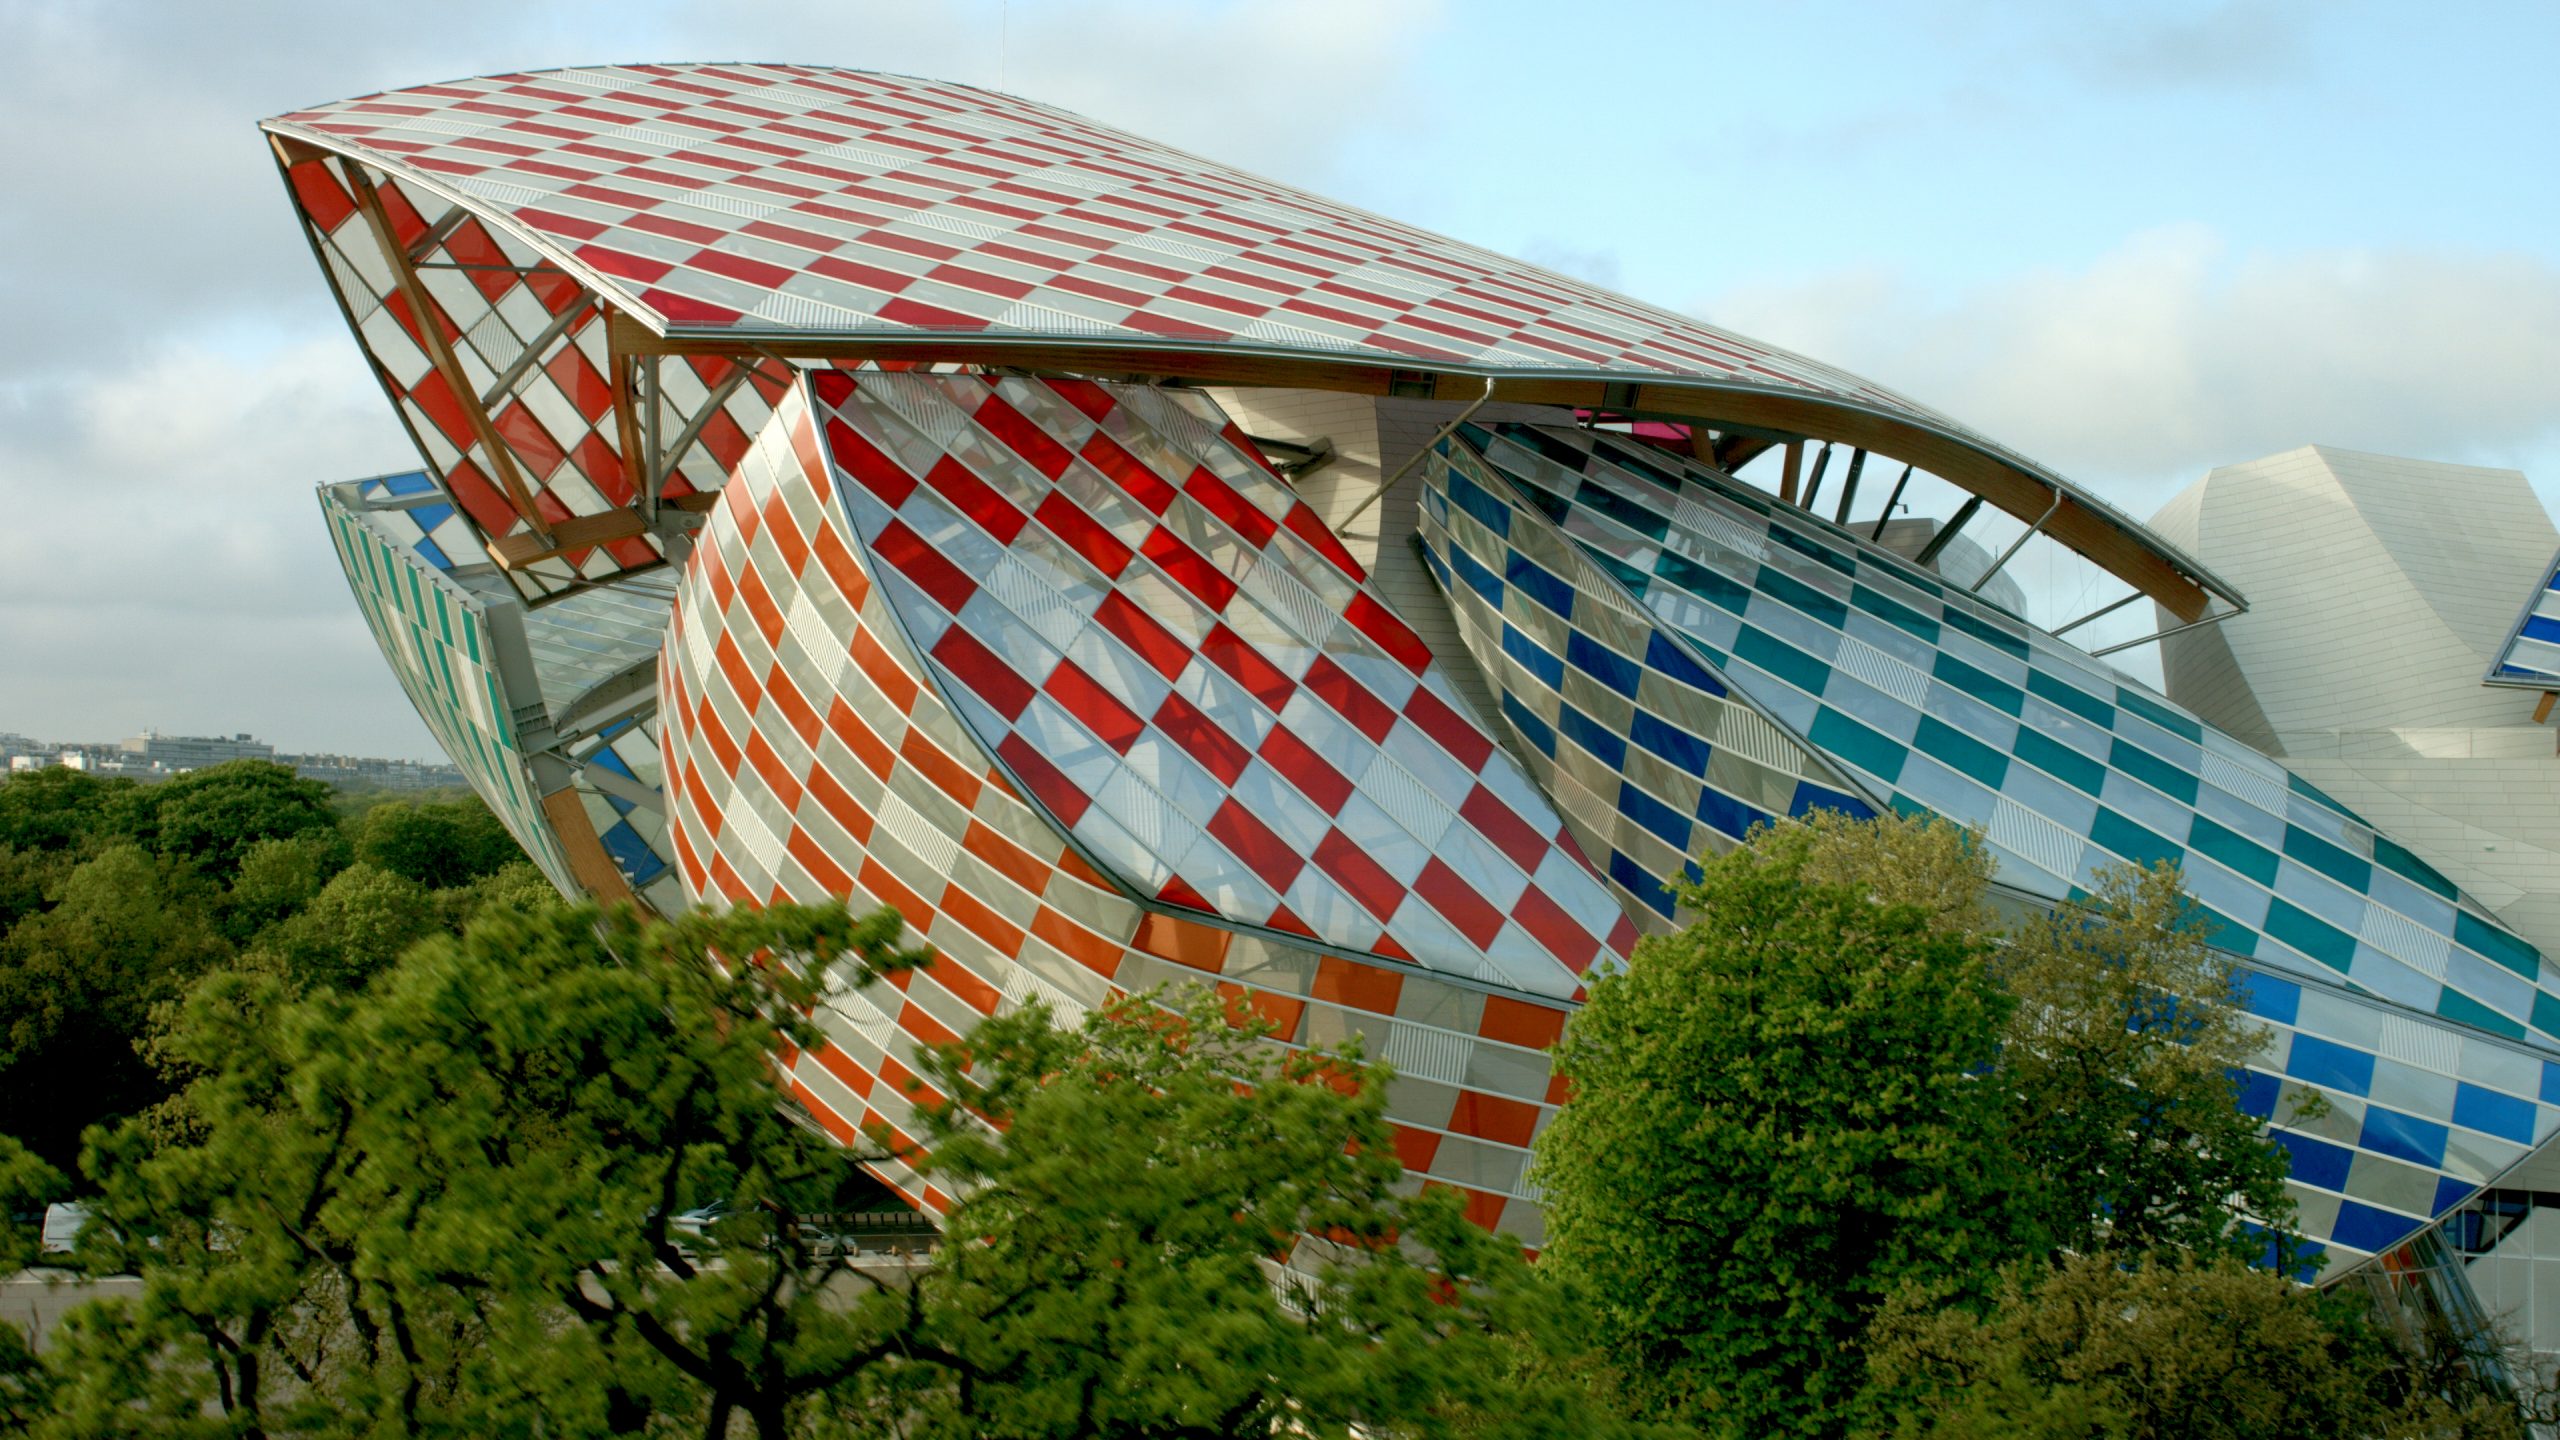 Fondation-Louis-Vuitton-pour-la-creation-by-Frank-Gehry-17